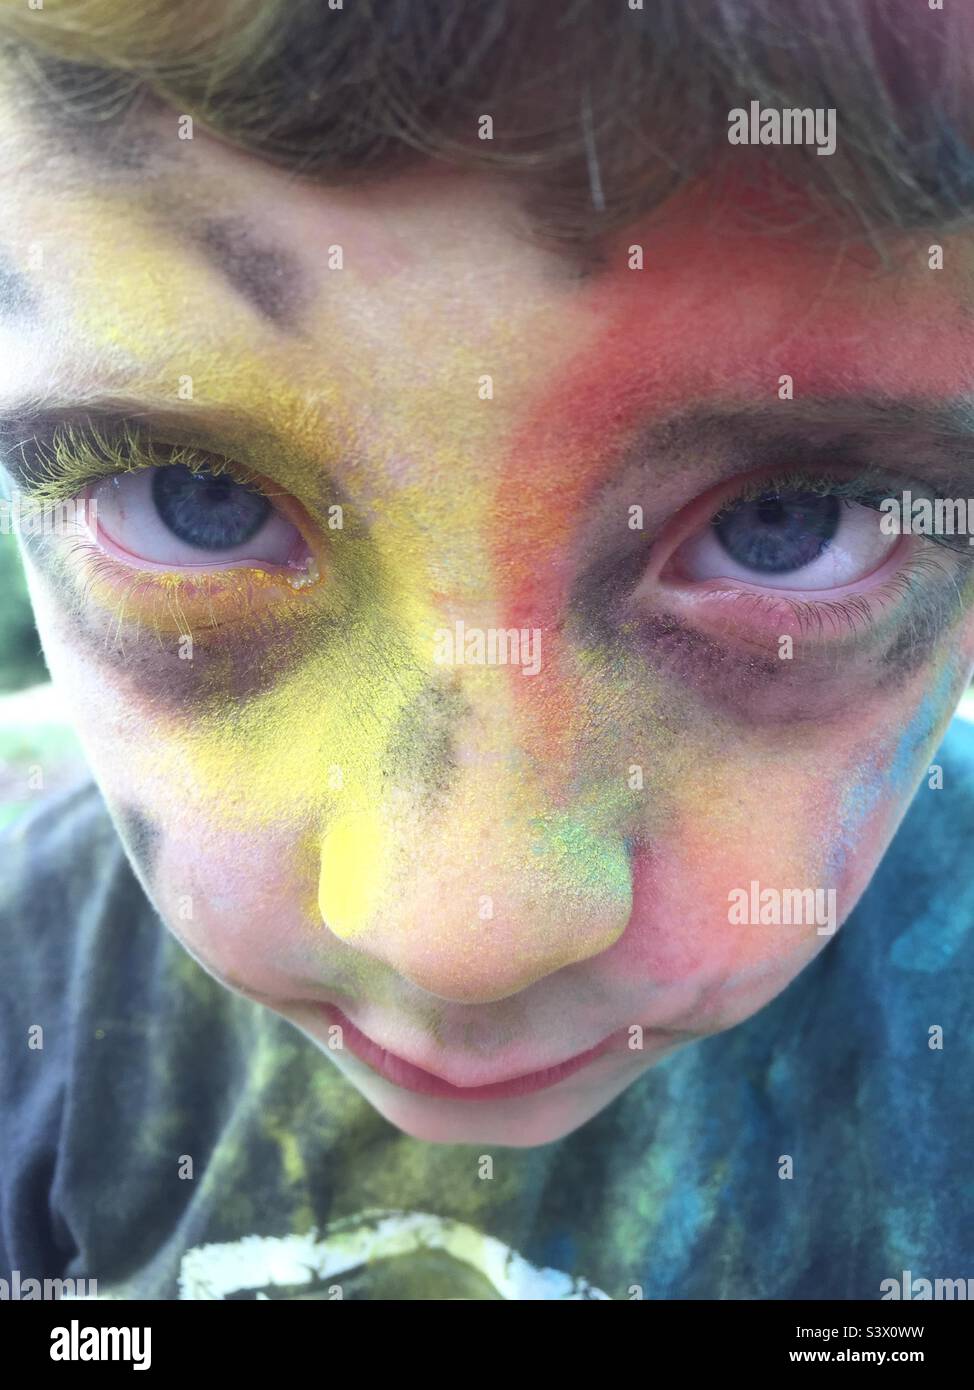 Il volto del bambino ricoperto di vernice a polvere non sorrida nessuna espressione Foto Stock